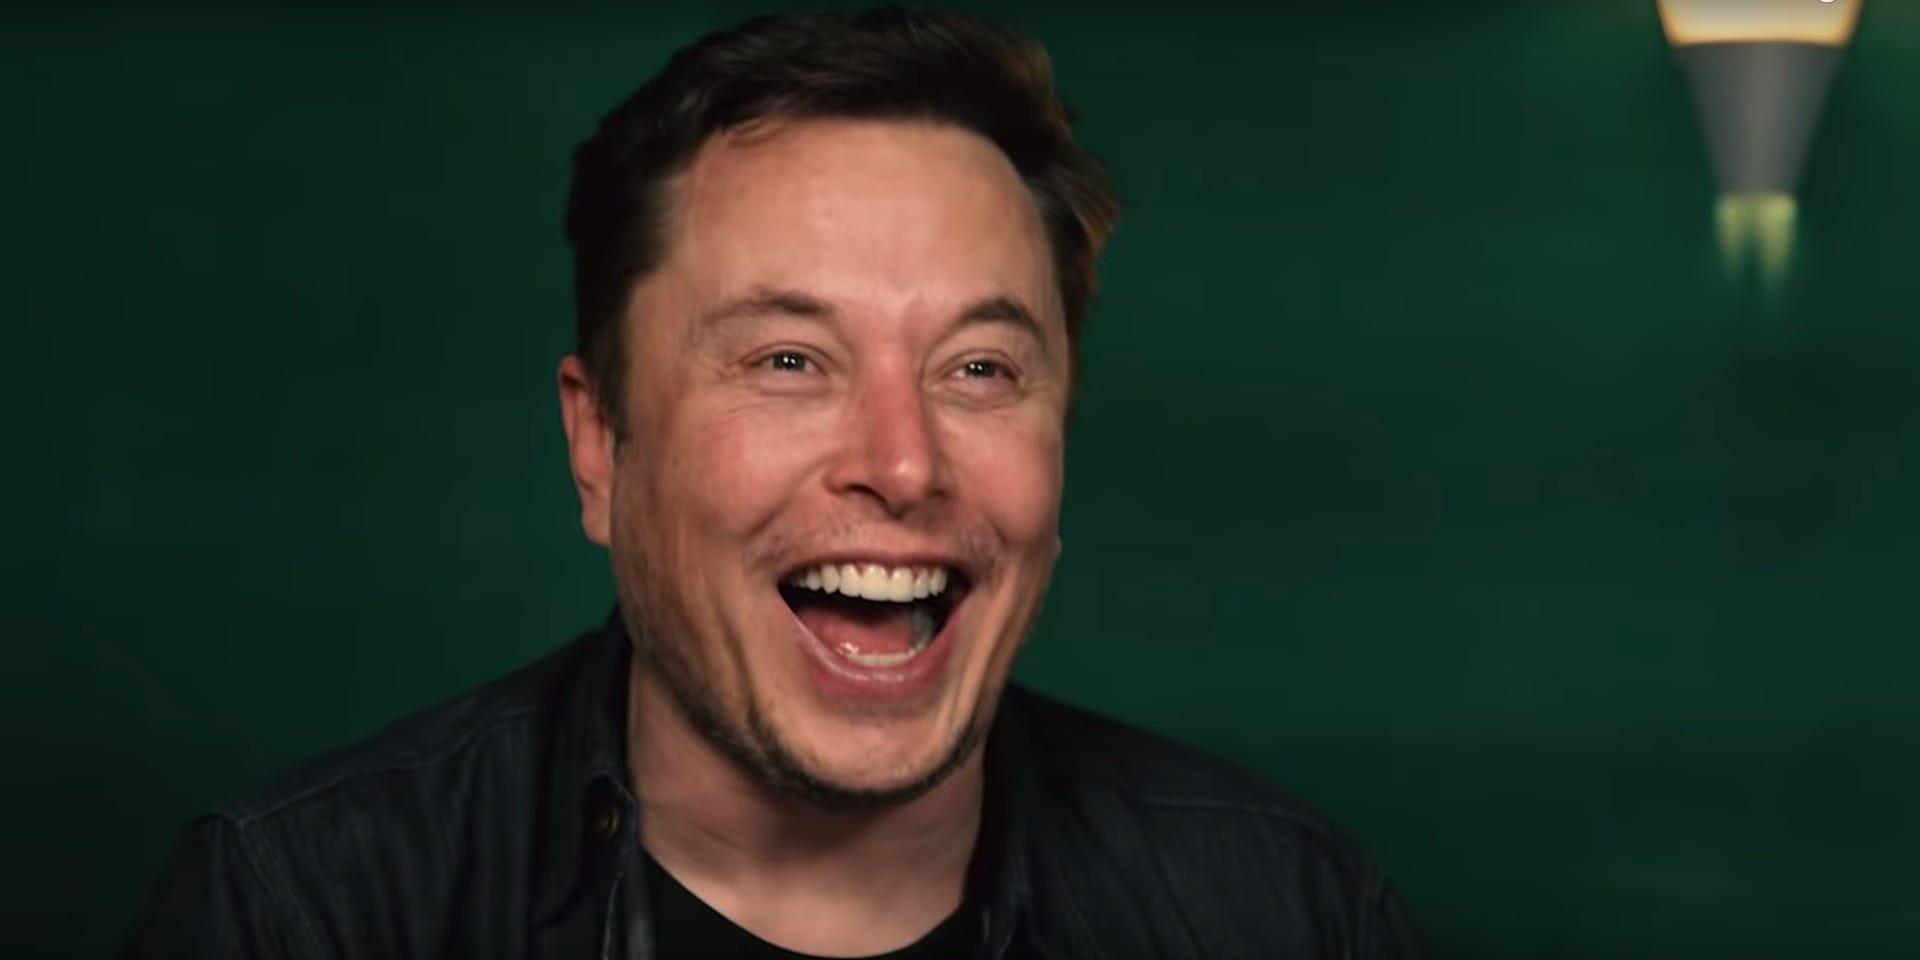 Merasa ‘sangat buruk’ tentang ekonomi, Musk ingin memangkas 10% dari pekerjaan Tesla